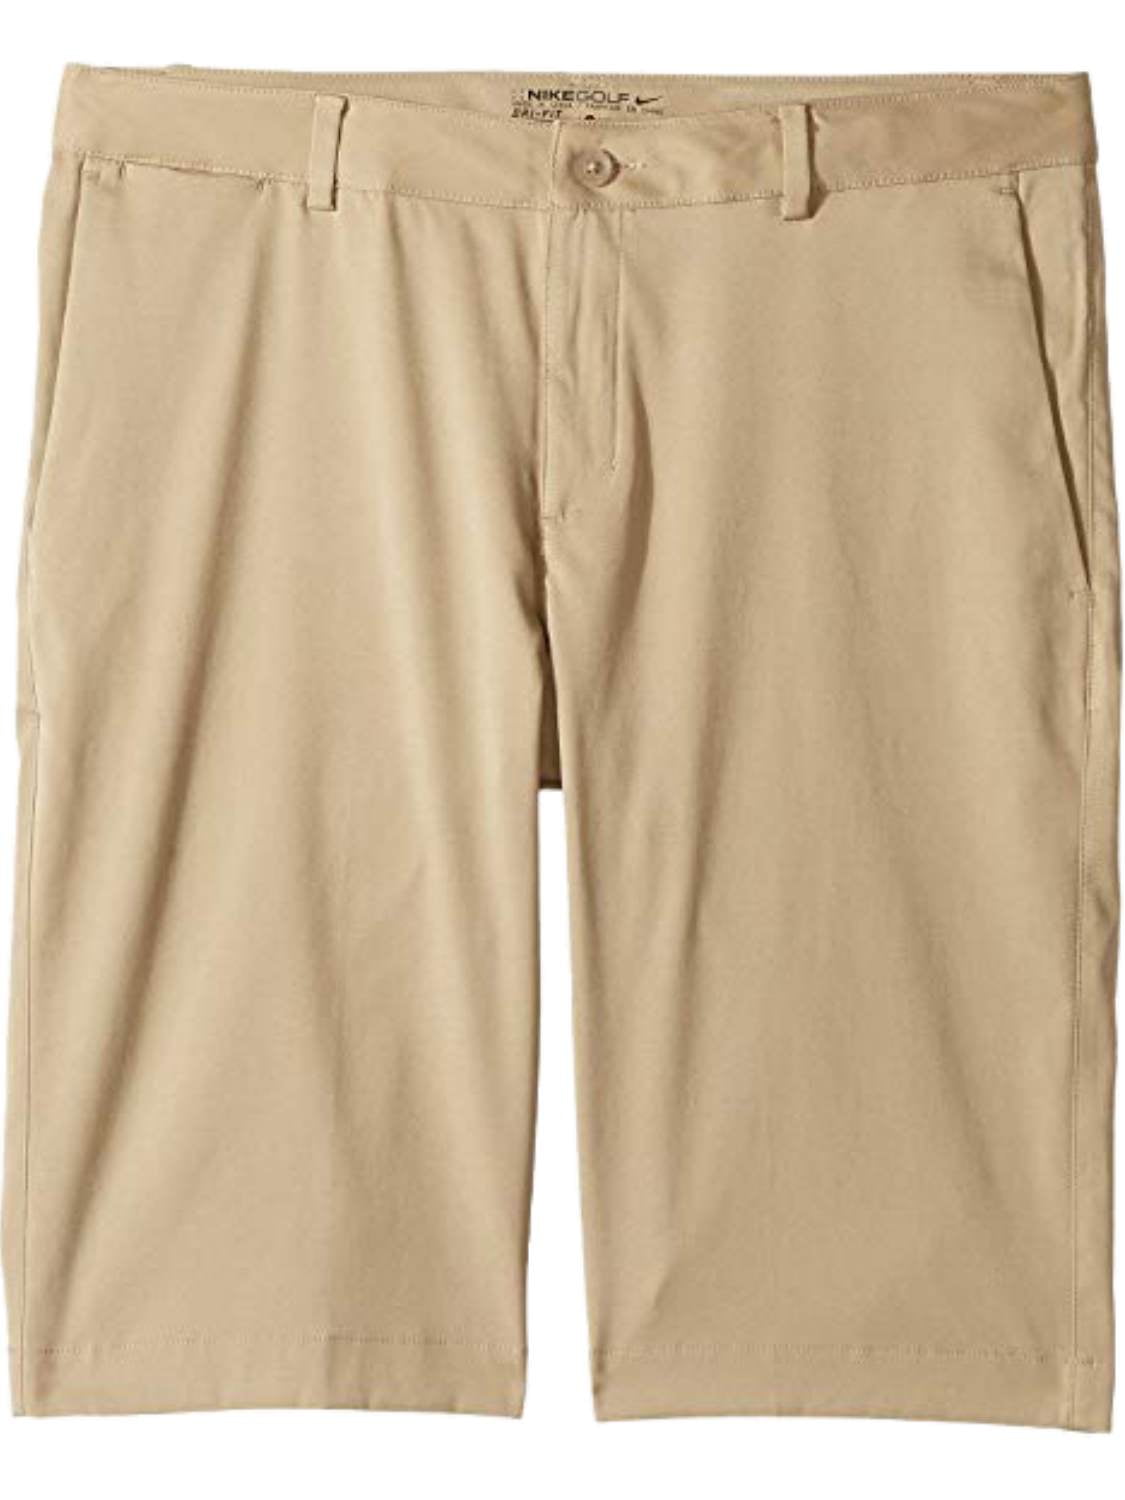 men's dri fit khaki shorts